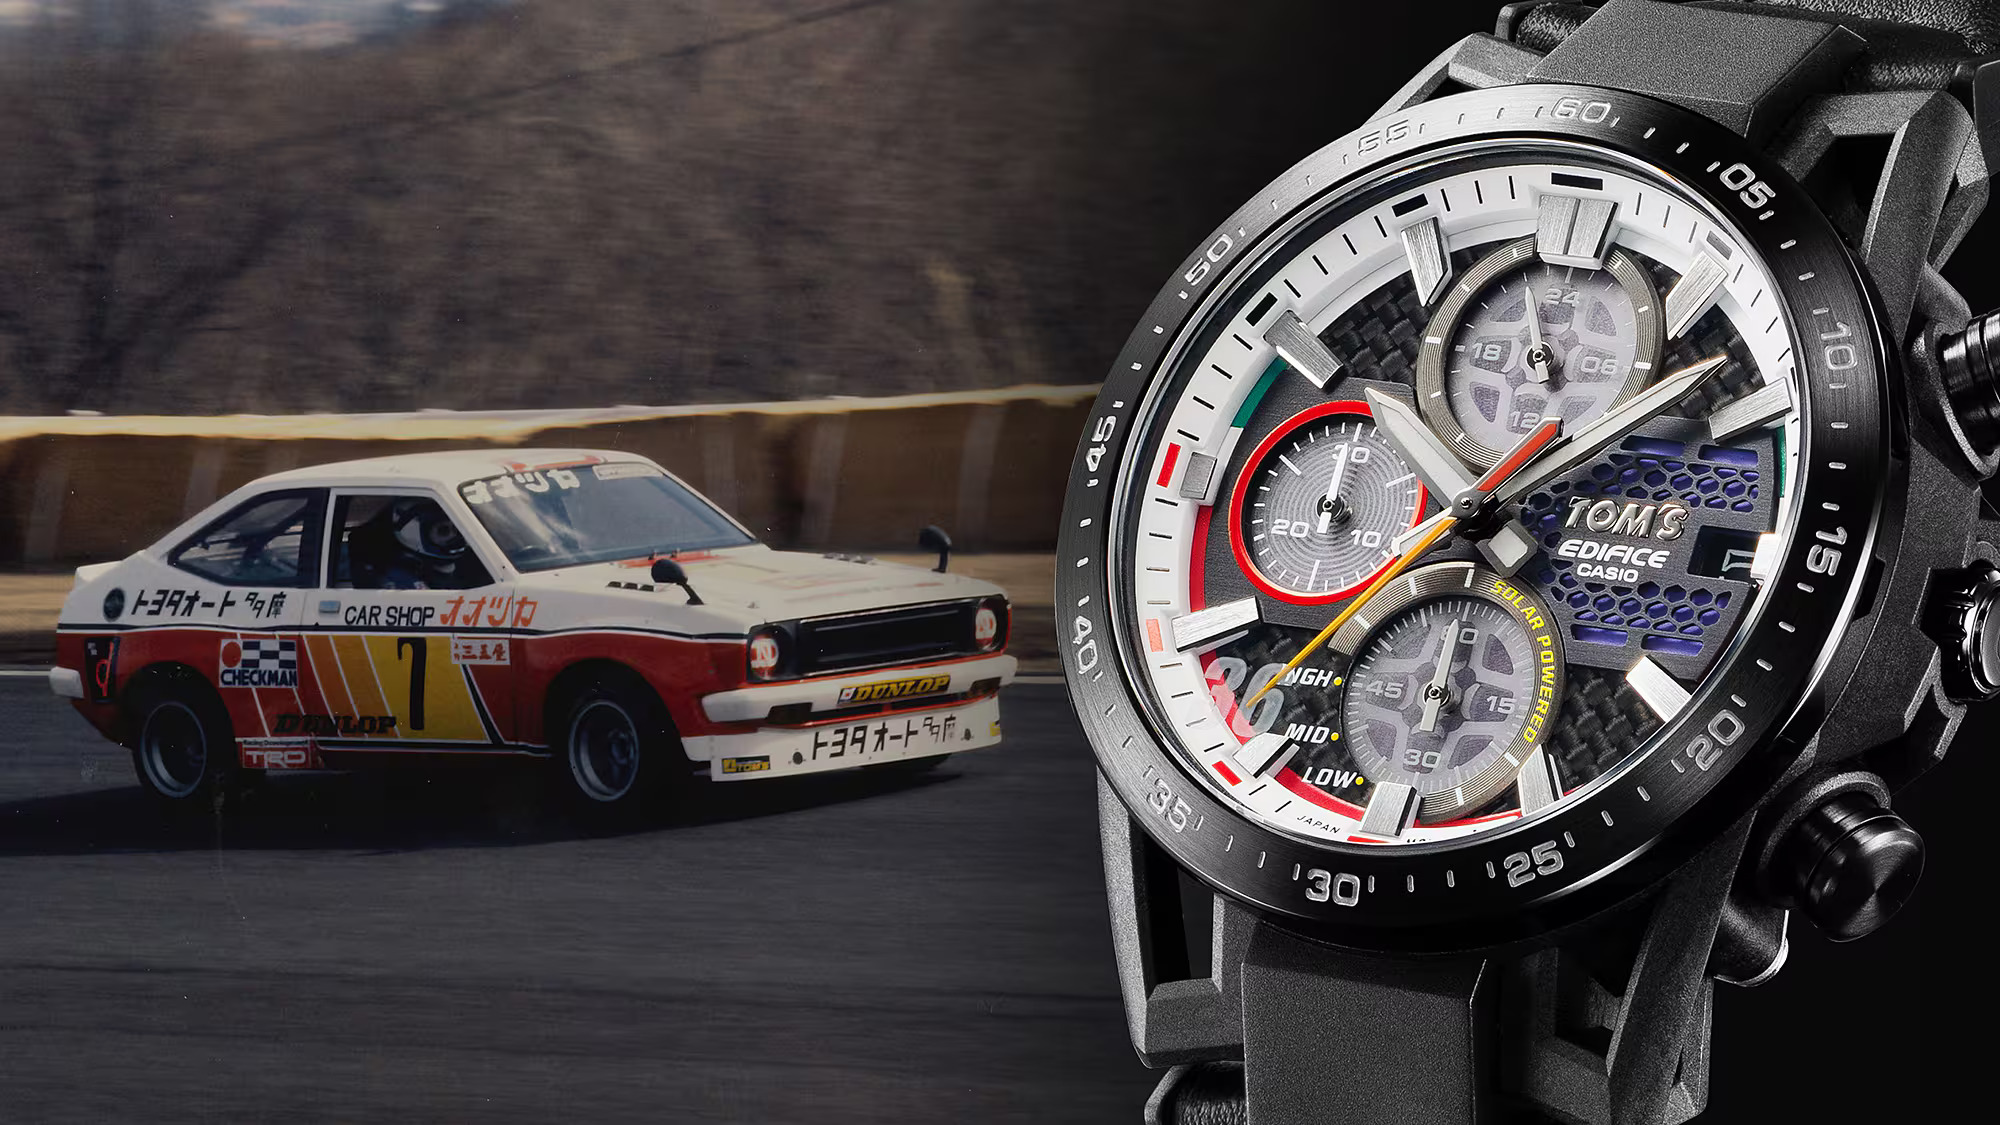 Casio випустила годинник EDIFICE TOM's 50th Anniversary Edition до 50-річчя японської гоночної команди TOM'S (фото)